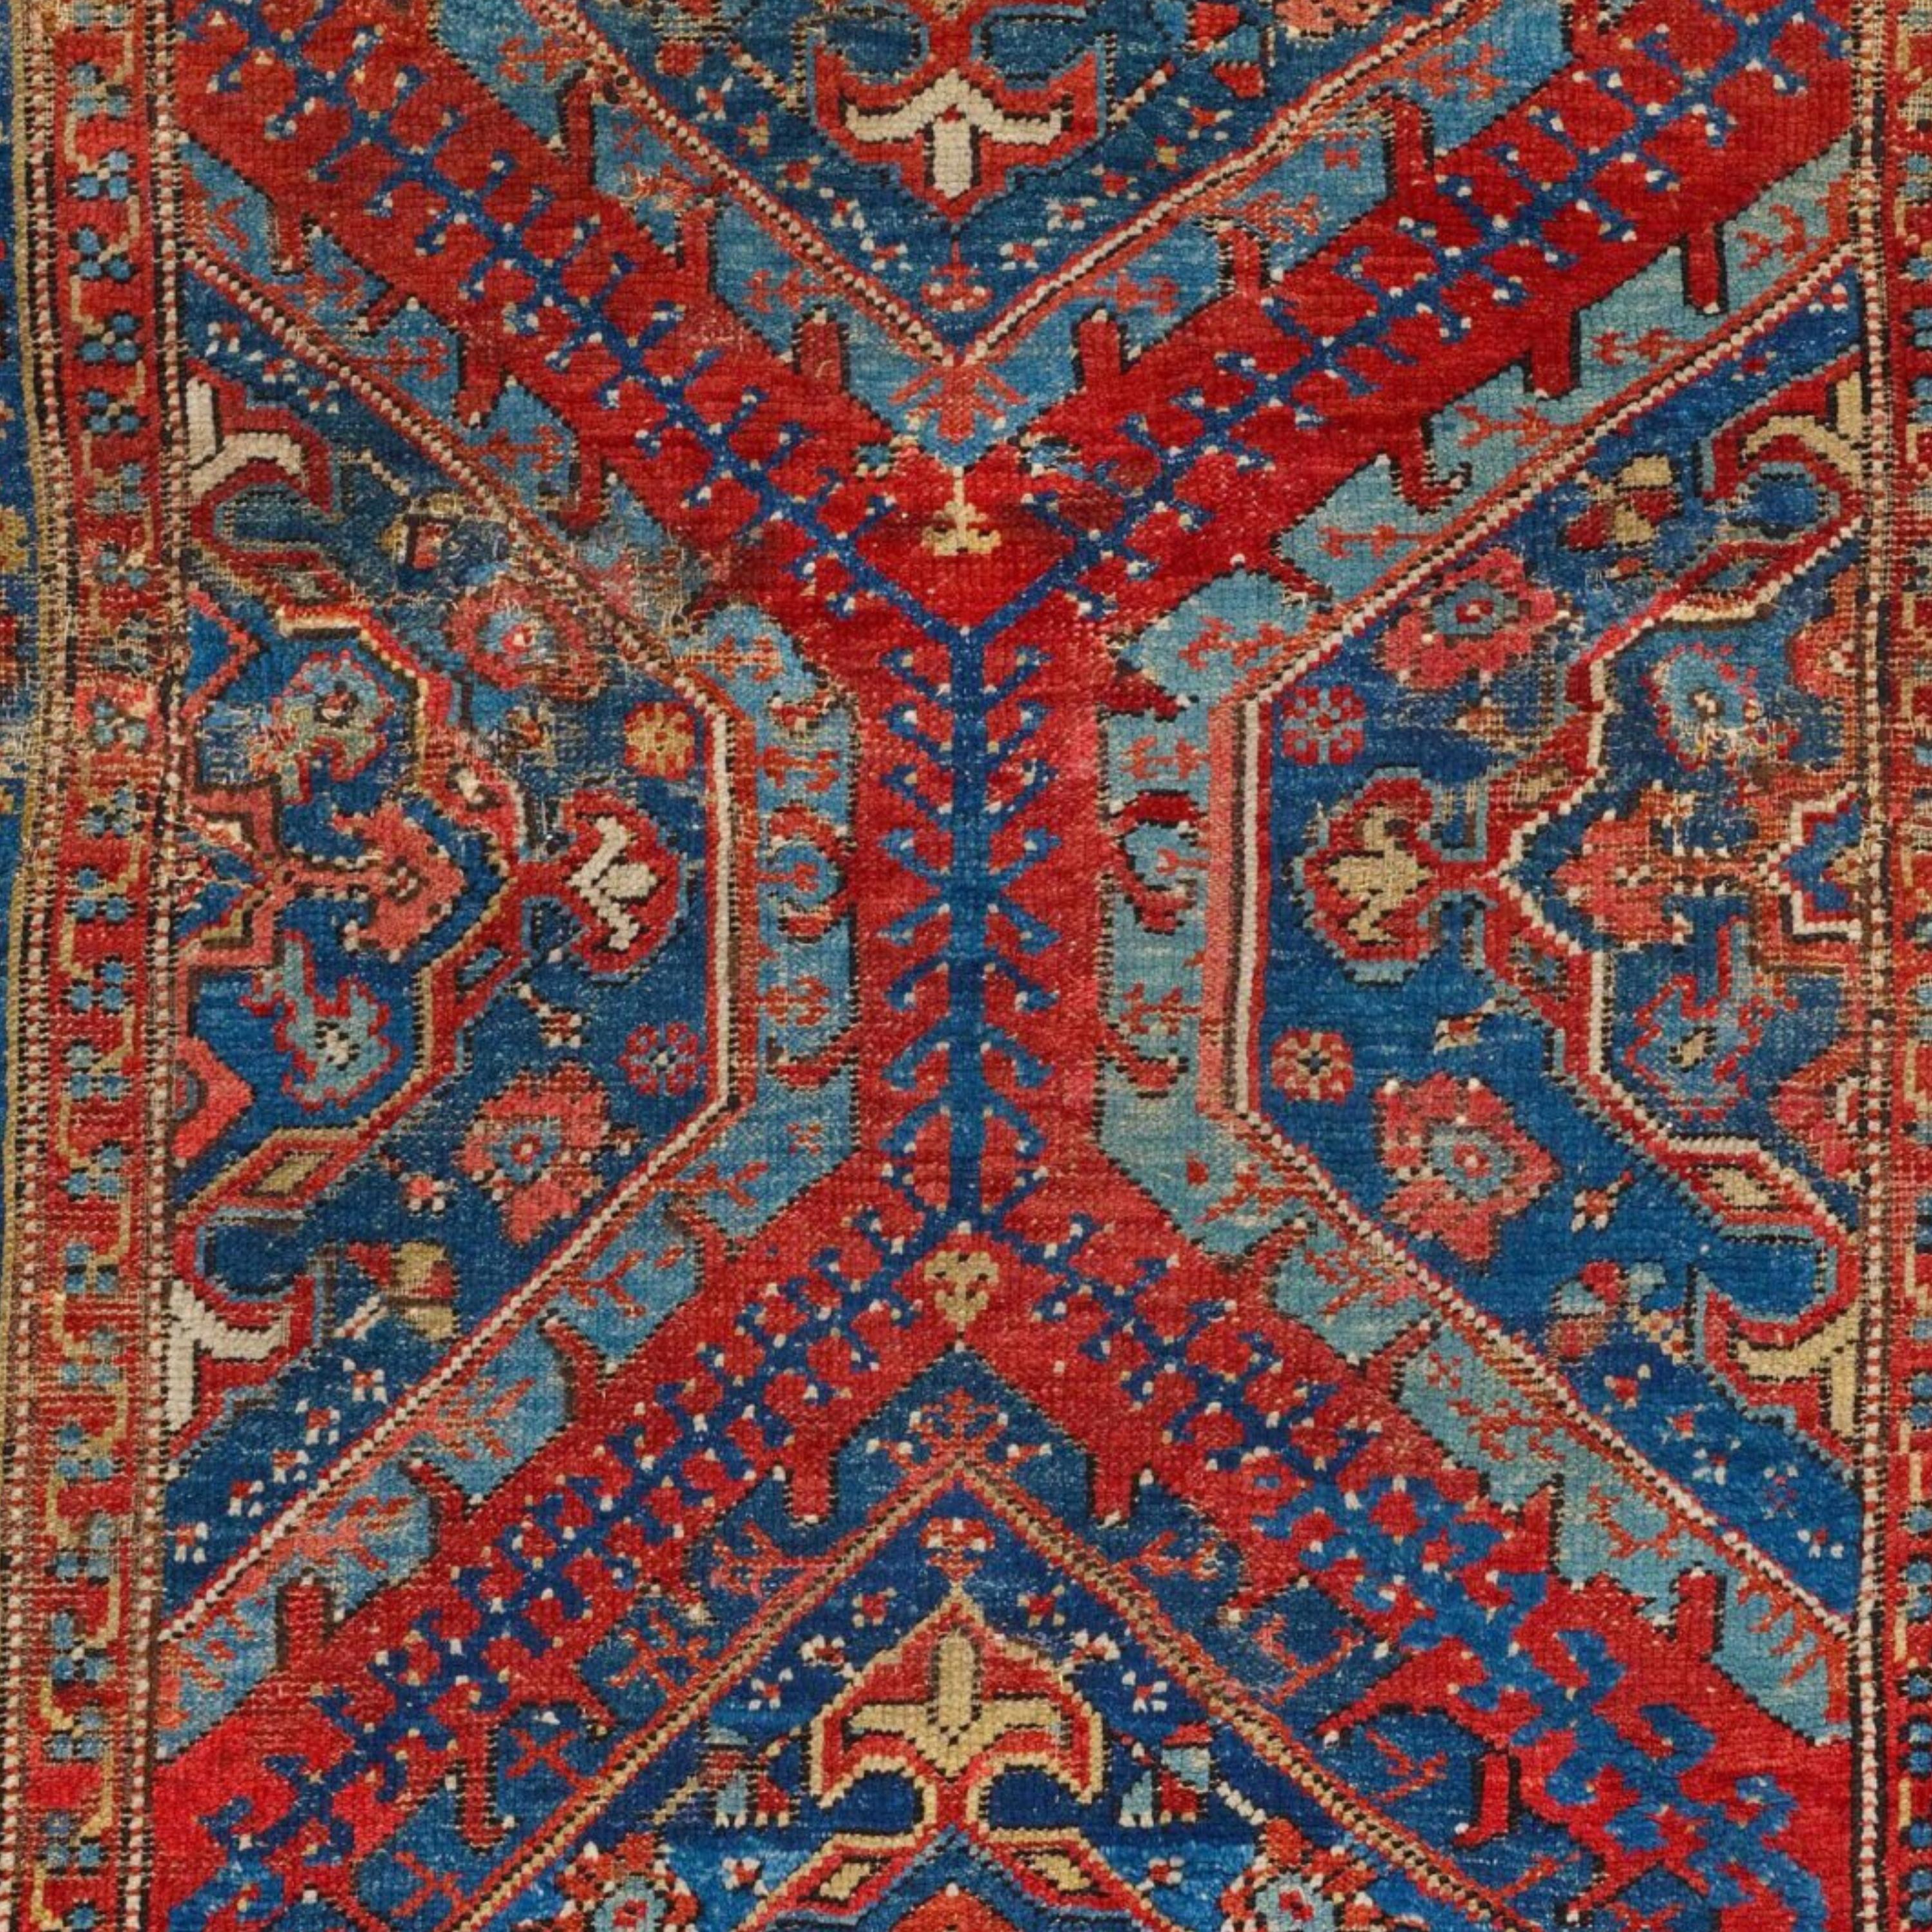 Turkish Antique Ushak Rug - Early 18th Century Anatolian Ushak Rug, Antique Carpet For Sale